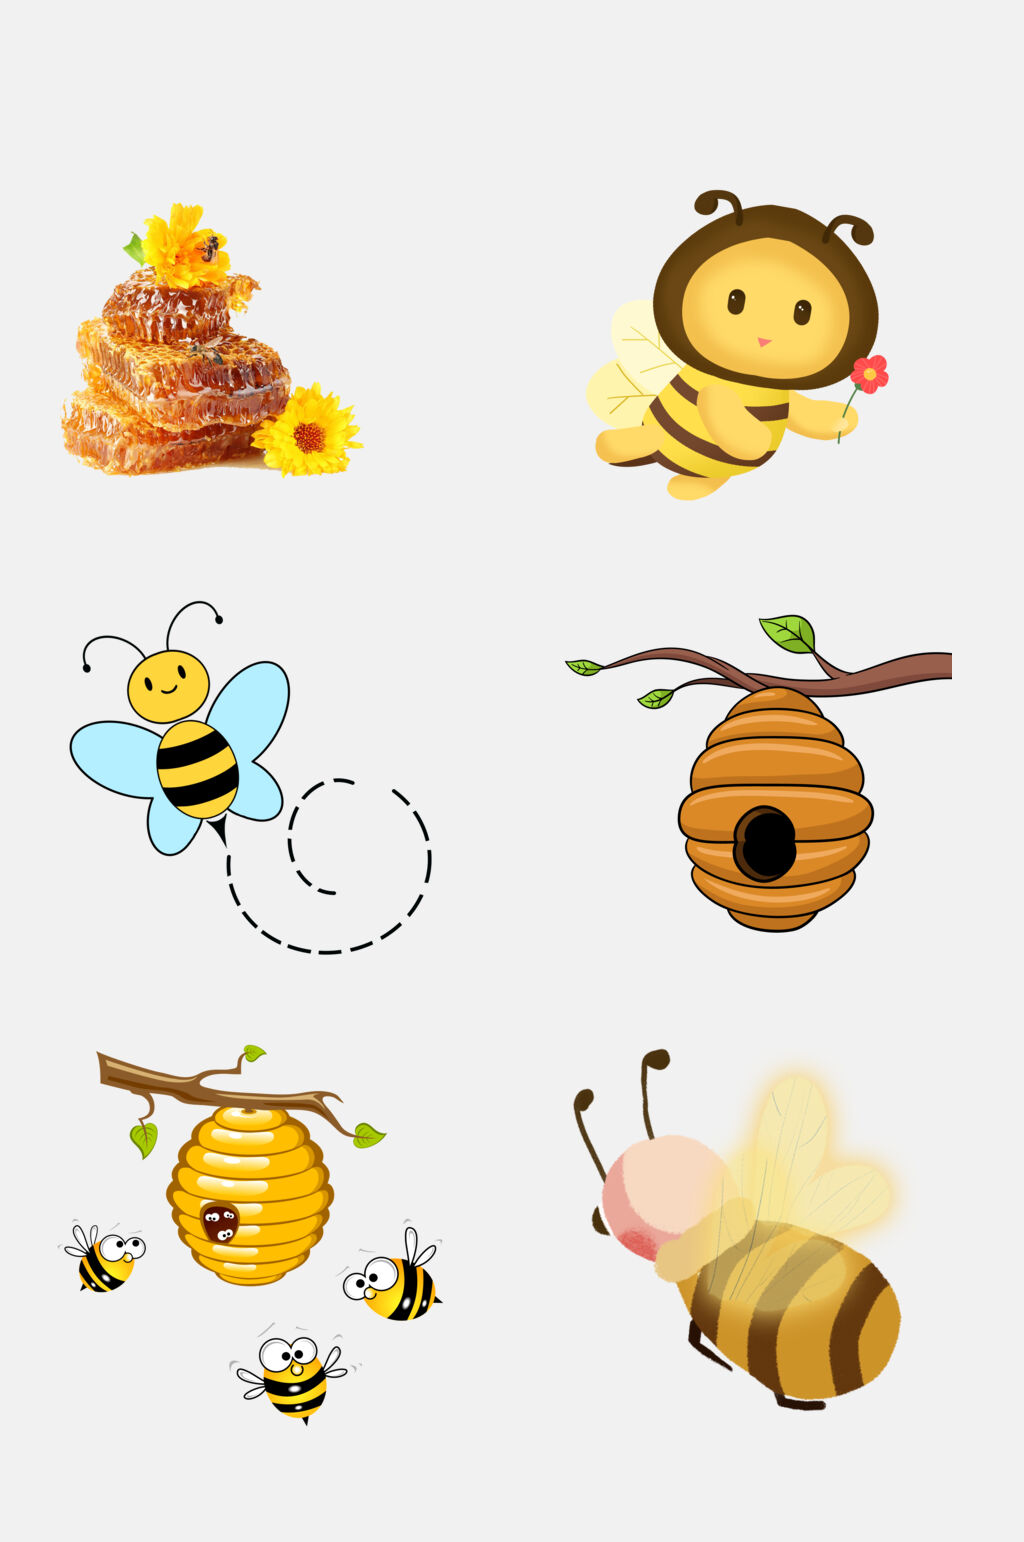 蜜蜂巢简笔画彩色图片